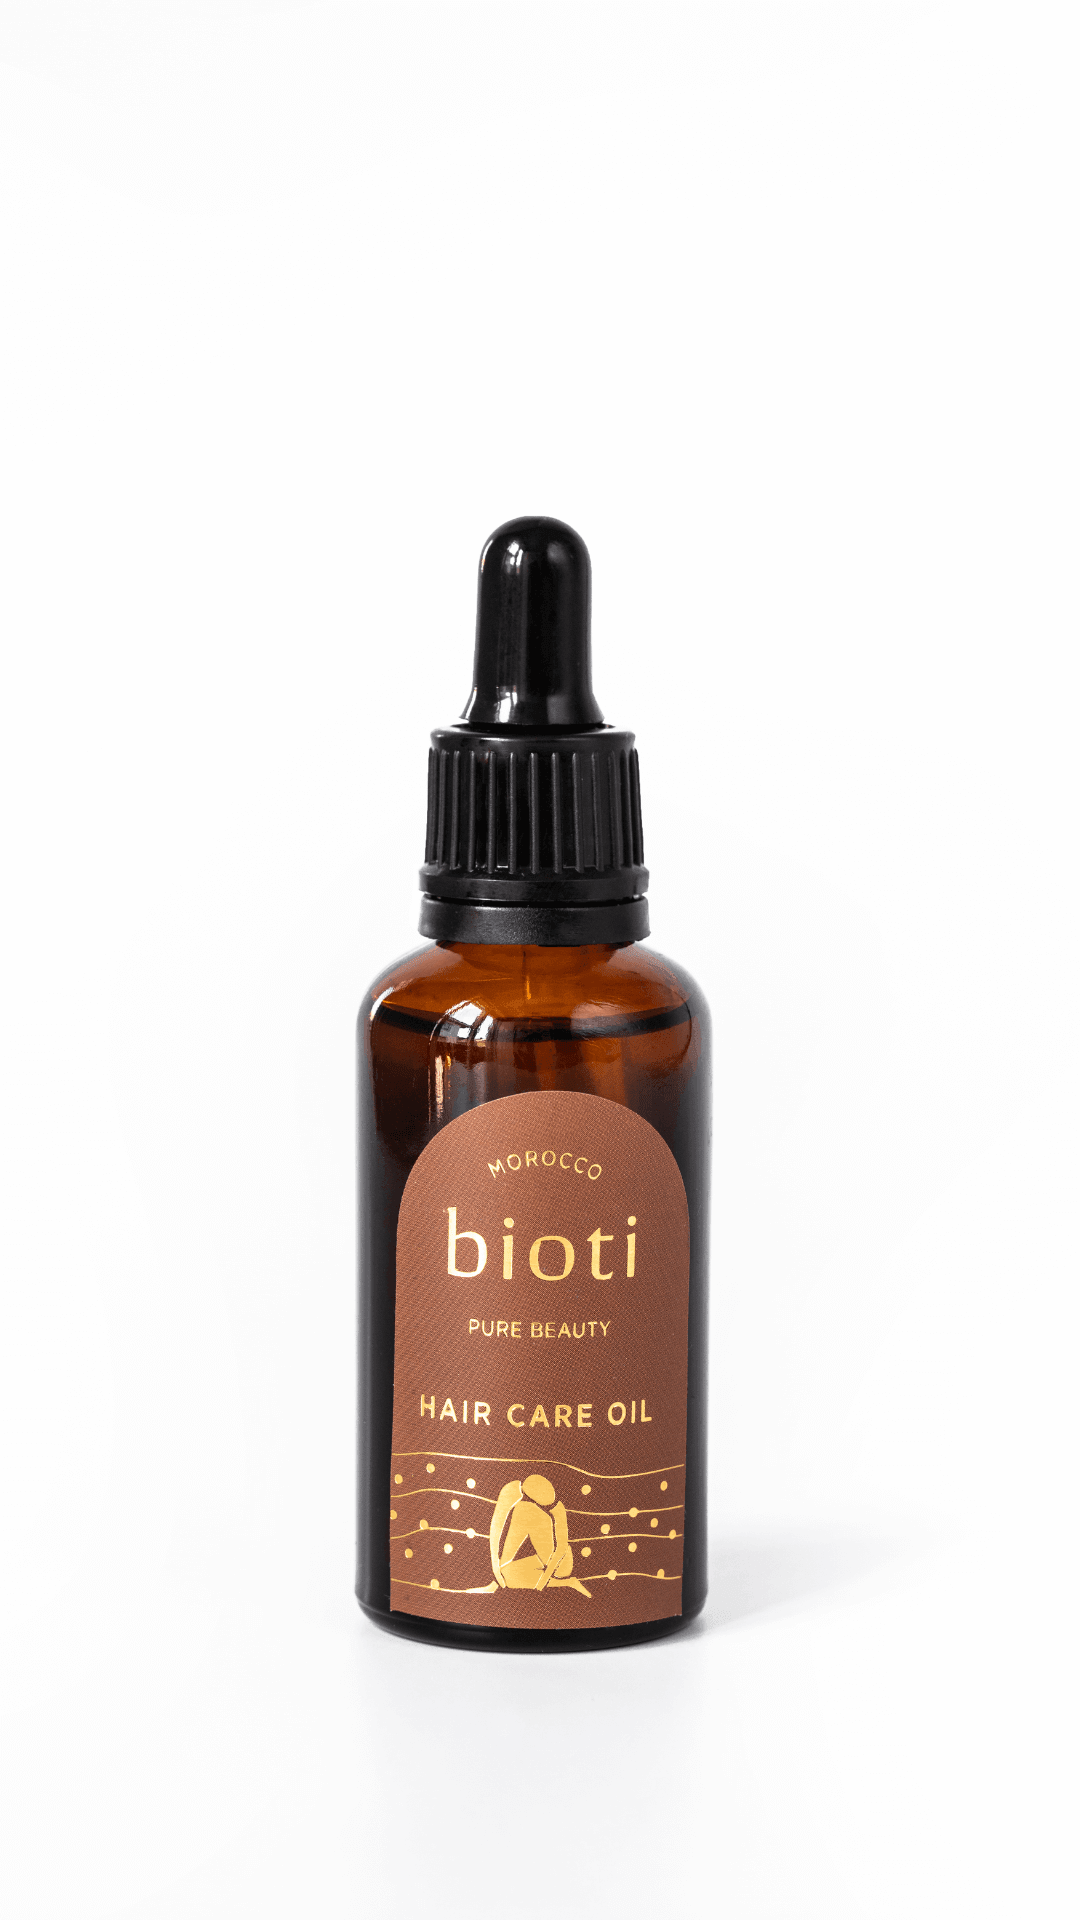 Bioti Hair Care - Argan Oil Hair Serum - Mixture of Natural Oils